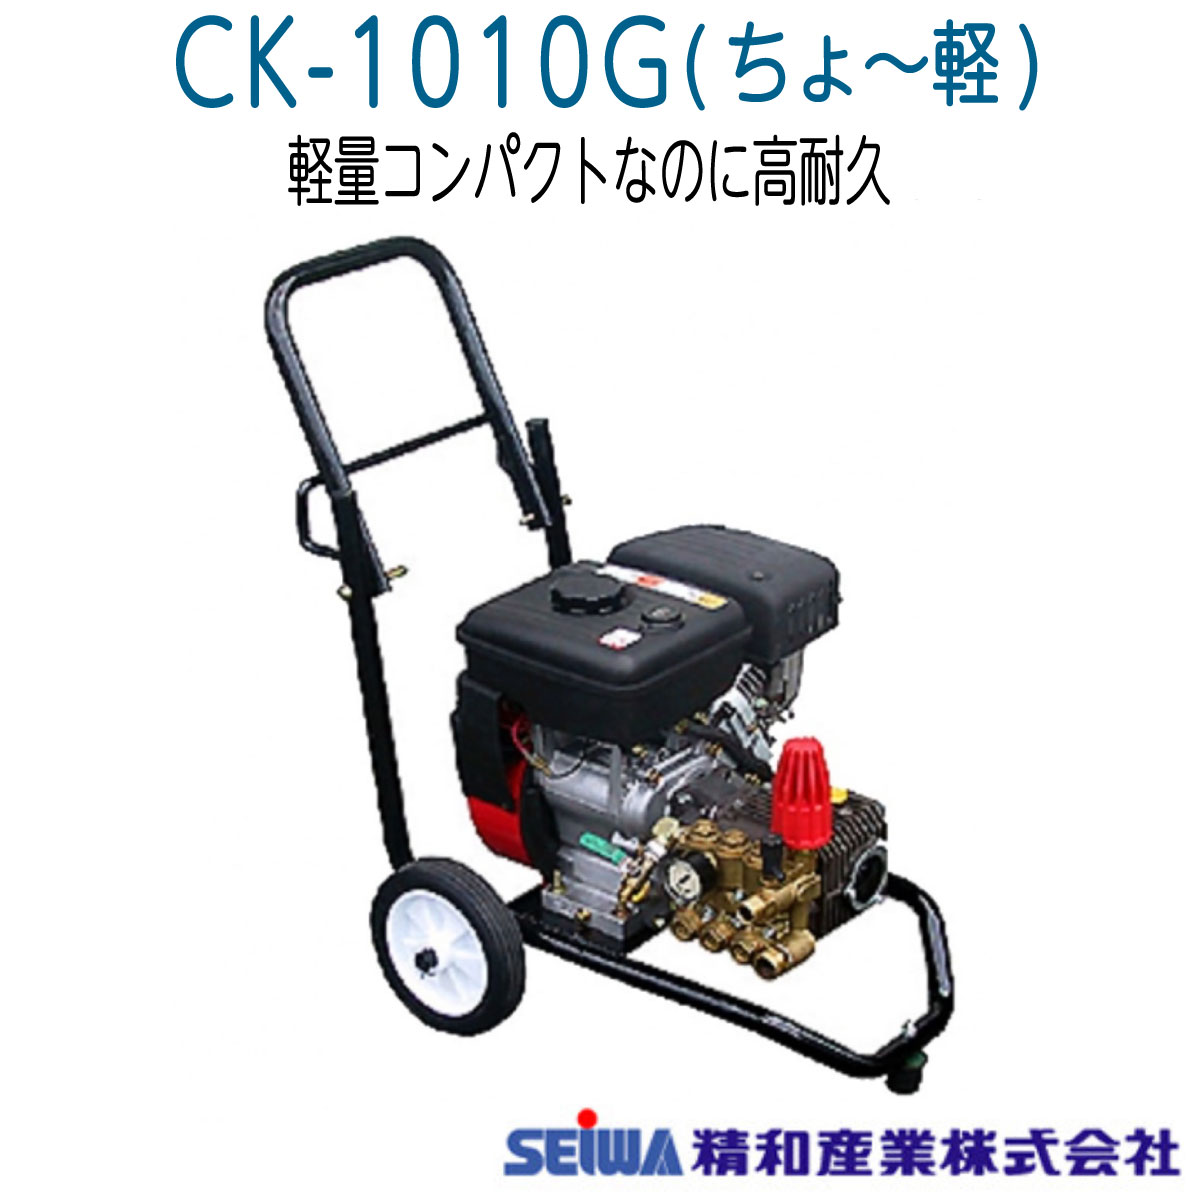 精和産業株式会社]エンジン式高圧洗浄機セット - 自転車